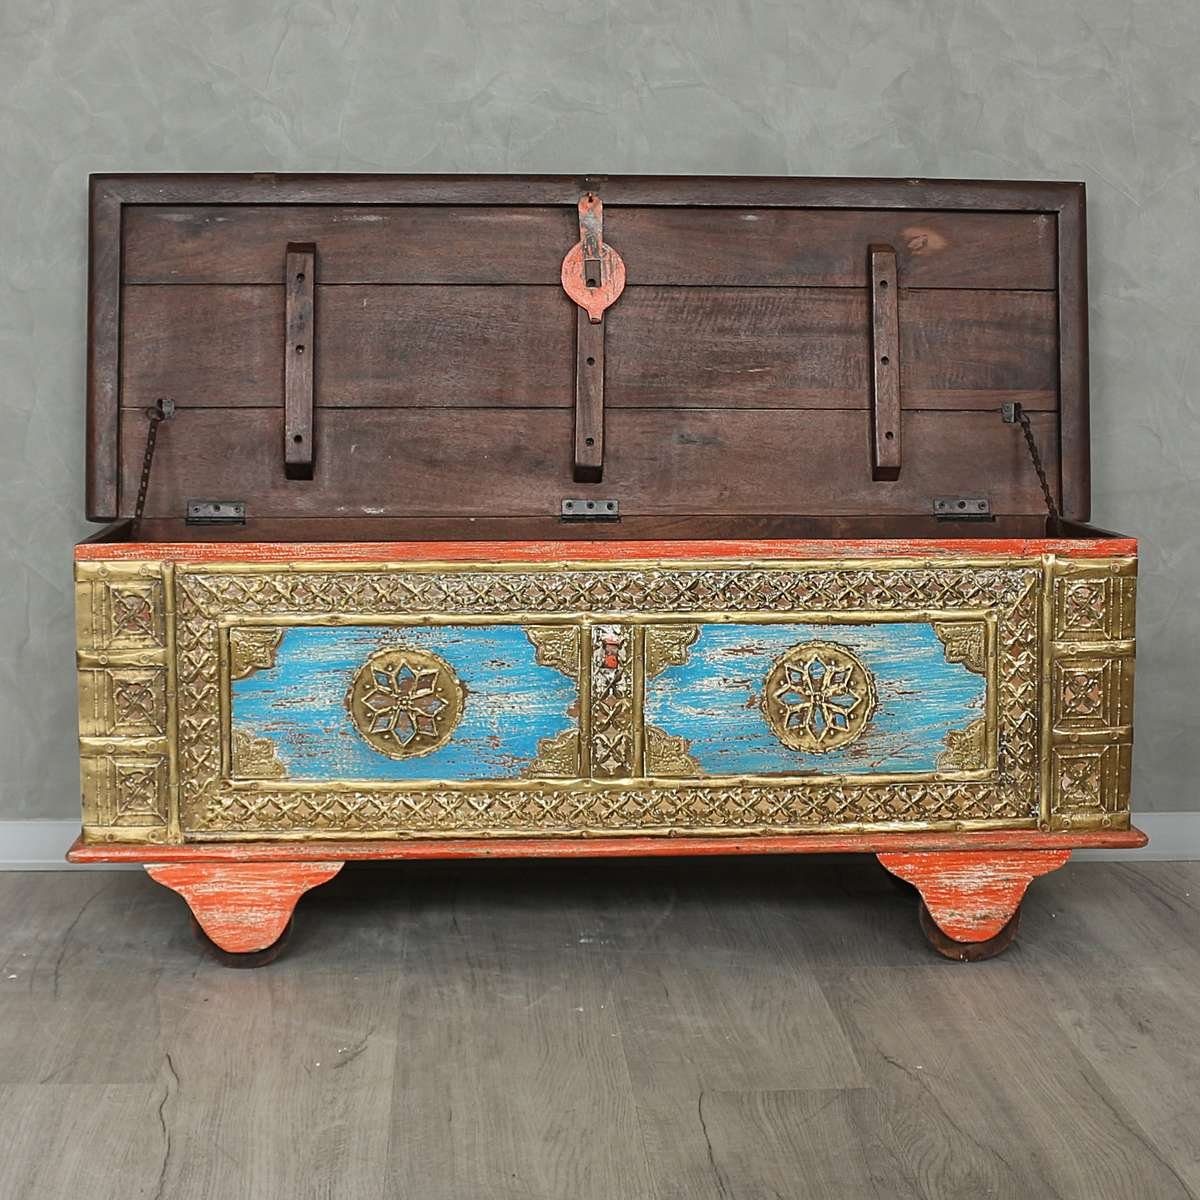 Handarbeit Ursprungsland Truhe Galerie Orange im in Indische cm, traditionelle Oriental Herstellung Rolltruhe 117